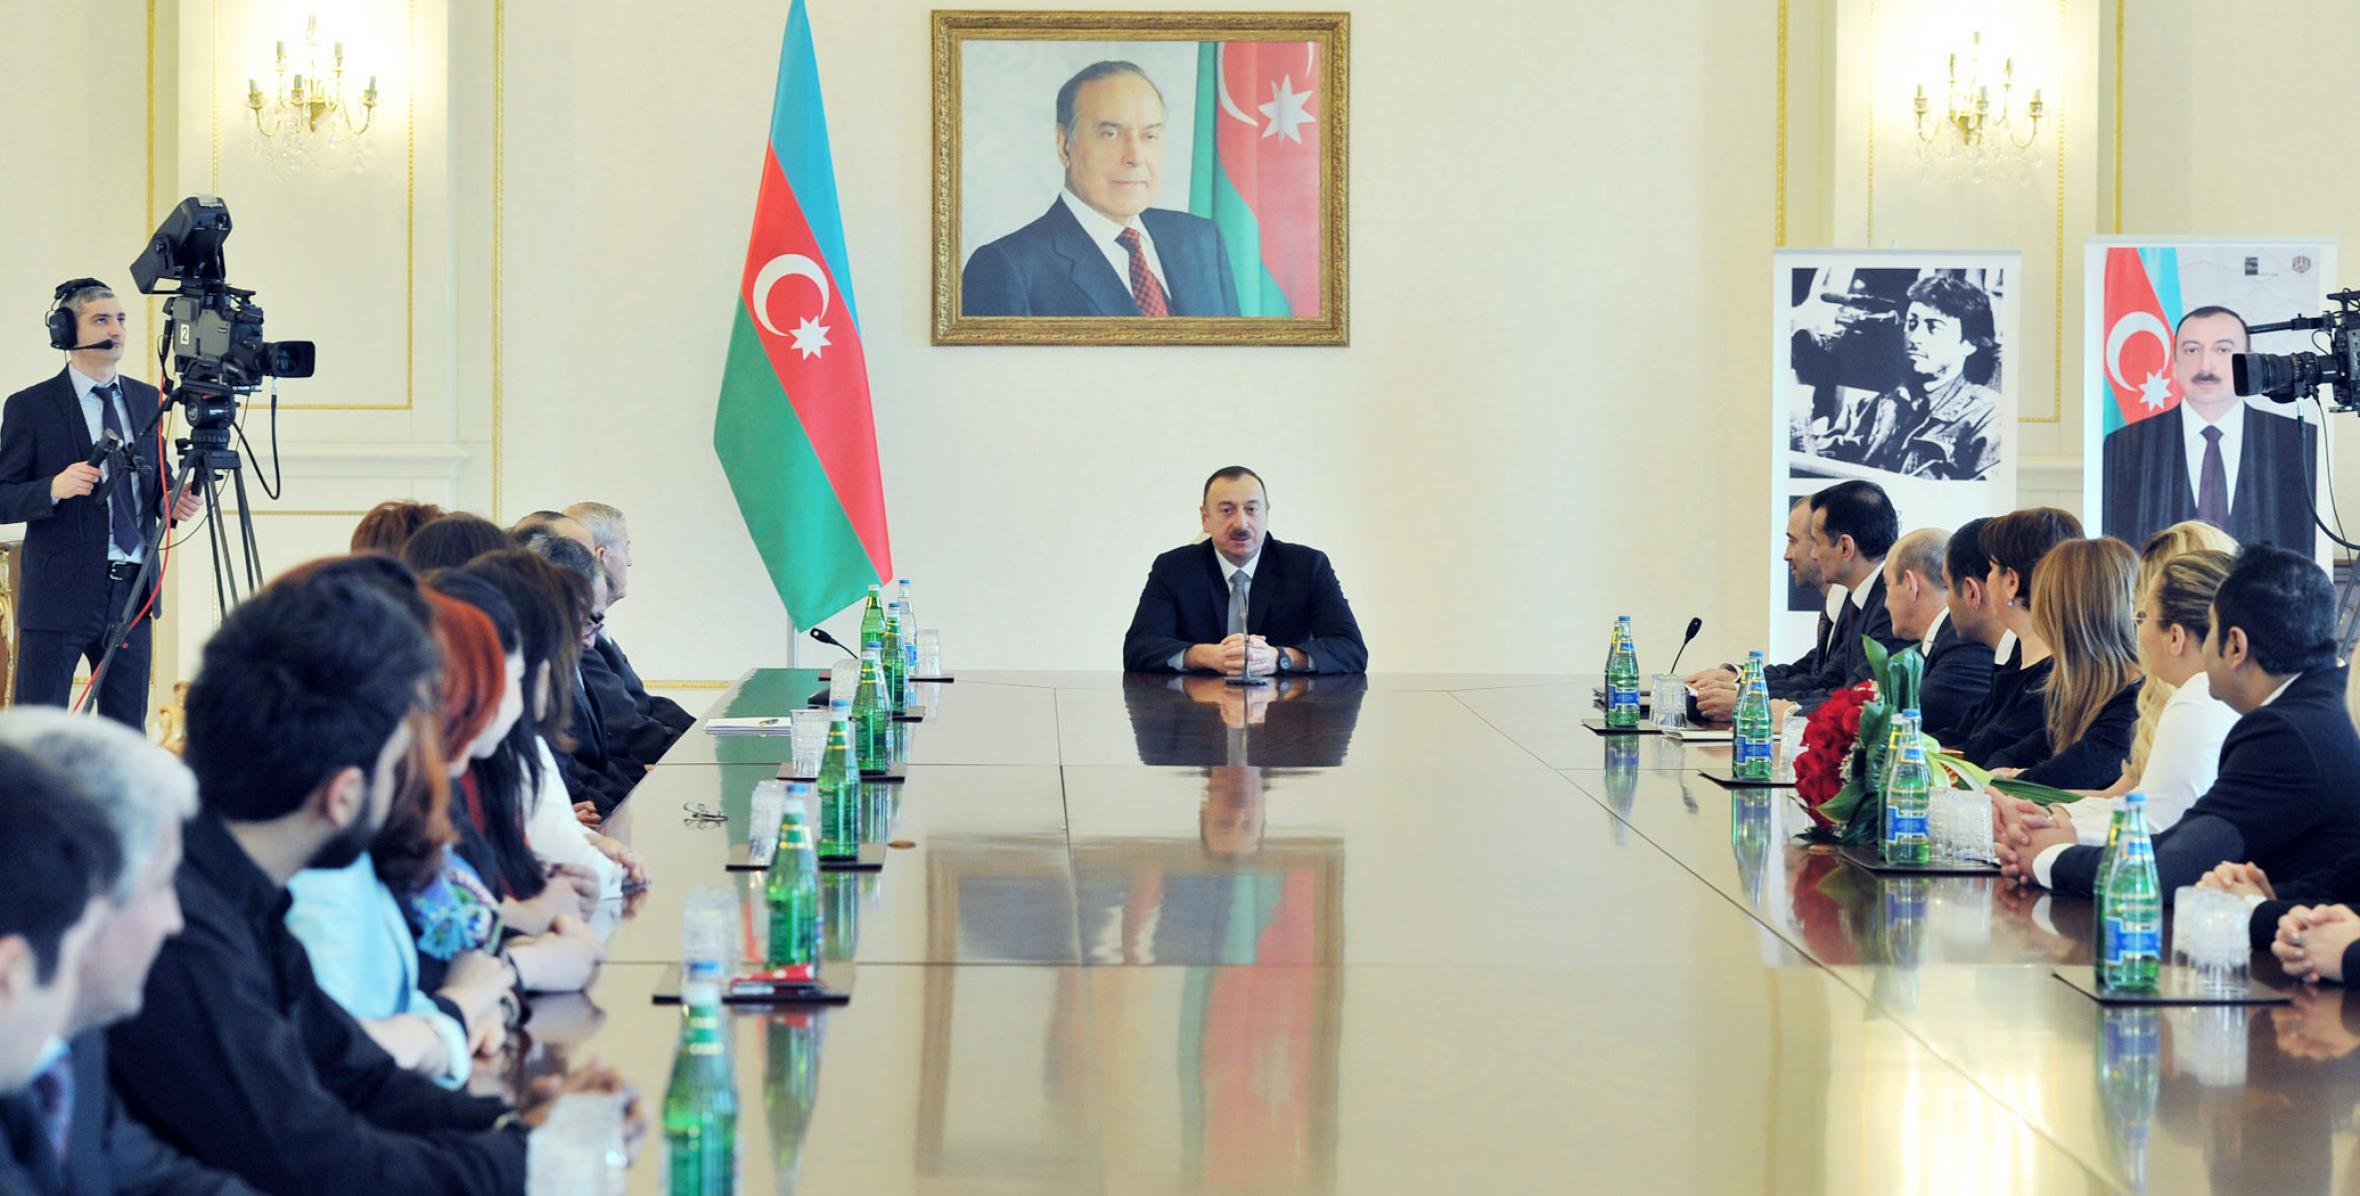 Речь Ильхама Алиева на церемонии вручения Президенту Азербайджанской Республики Ильхаму Алиеву премии «Человек 2013 года» Фонда Национального героя Чингиза Мустафаева и группы компаний ANS